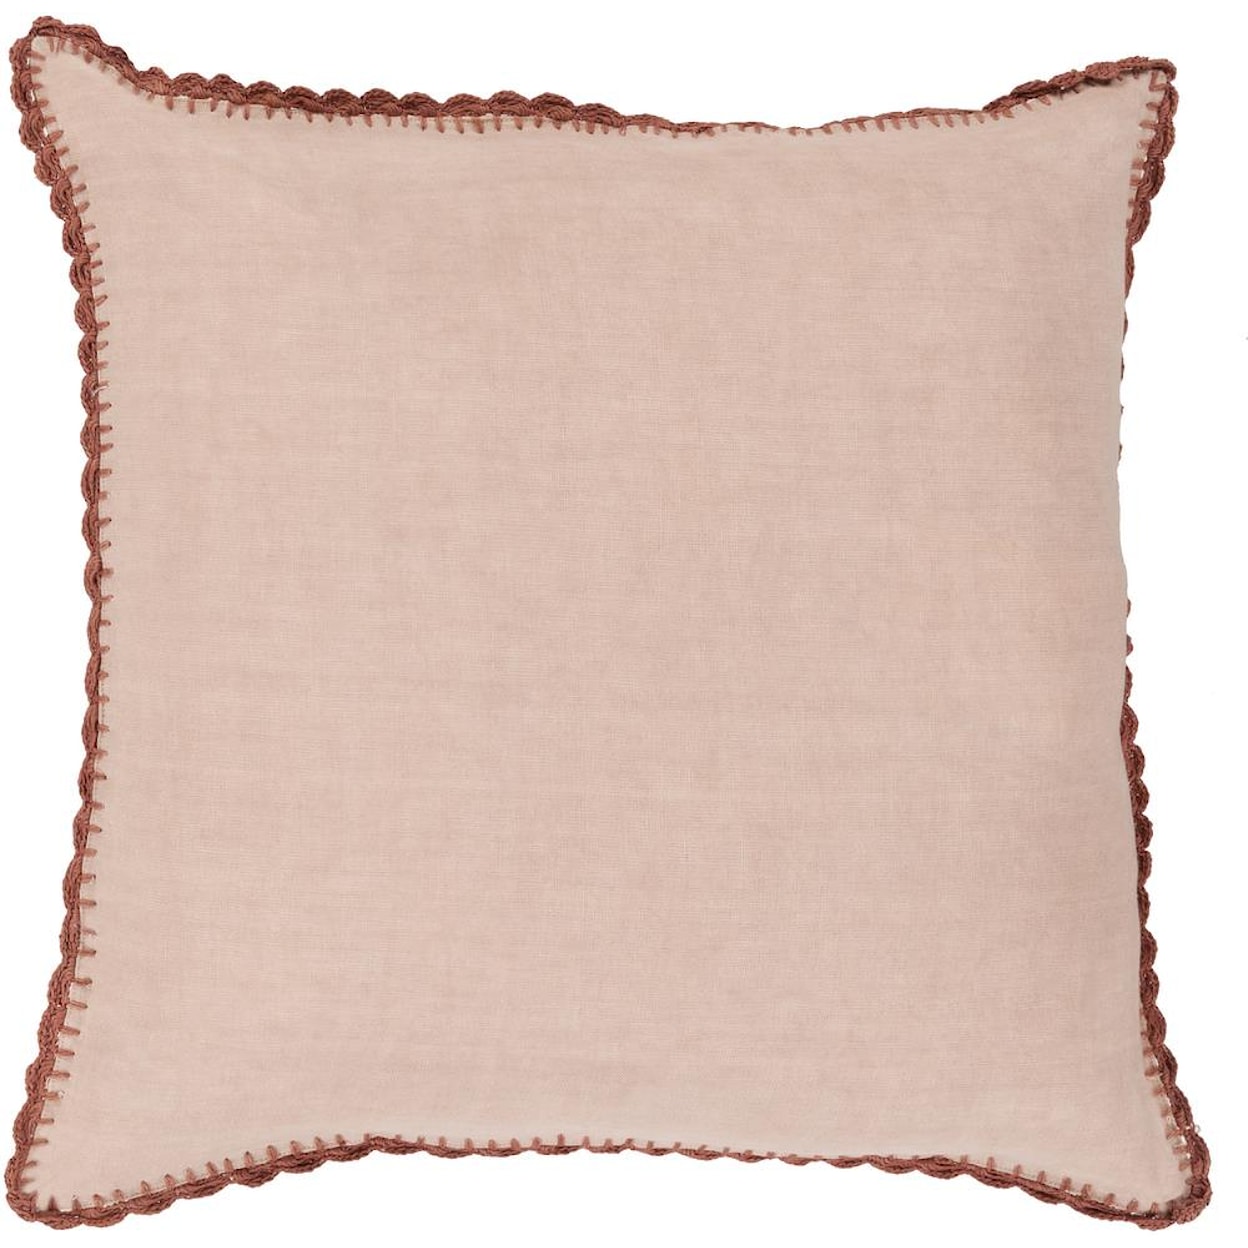 Surya Pillows 18" x 18" Decorative Pillow